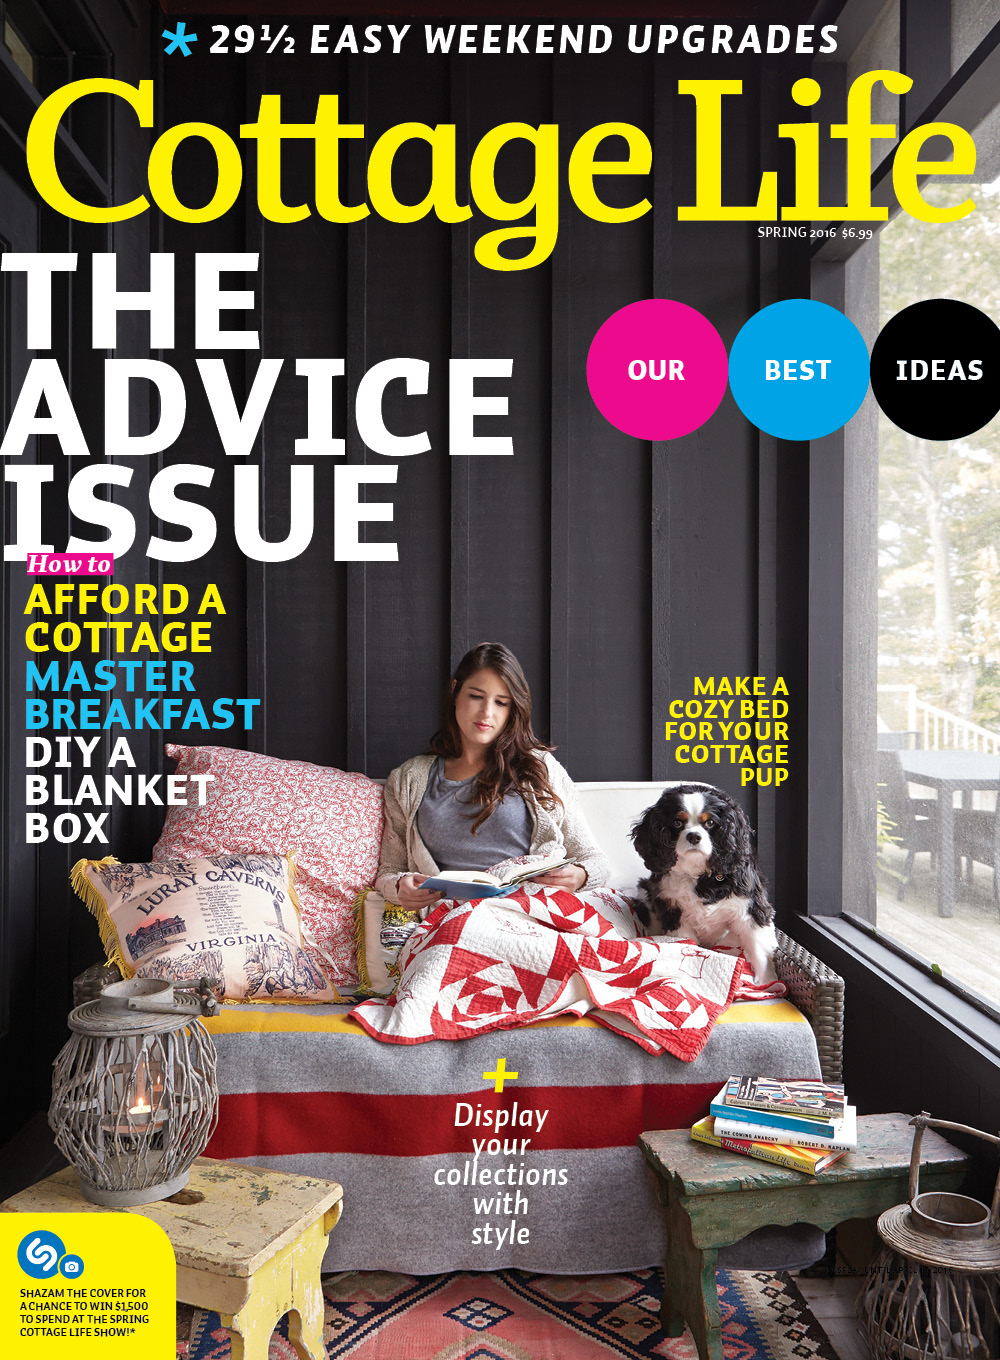 Spring 2016 Cottage Life Magazines Cottage Life